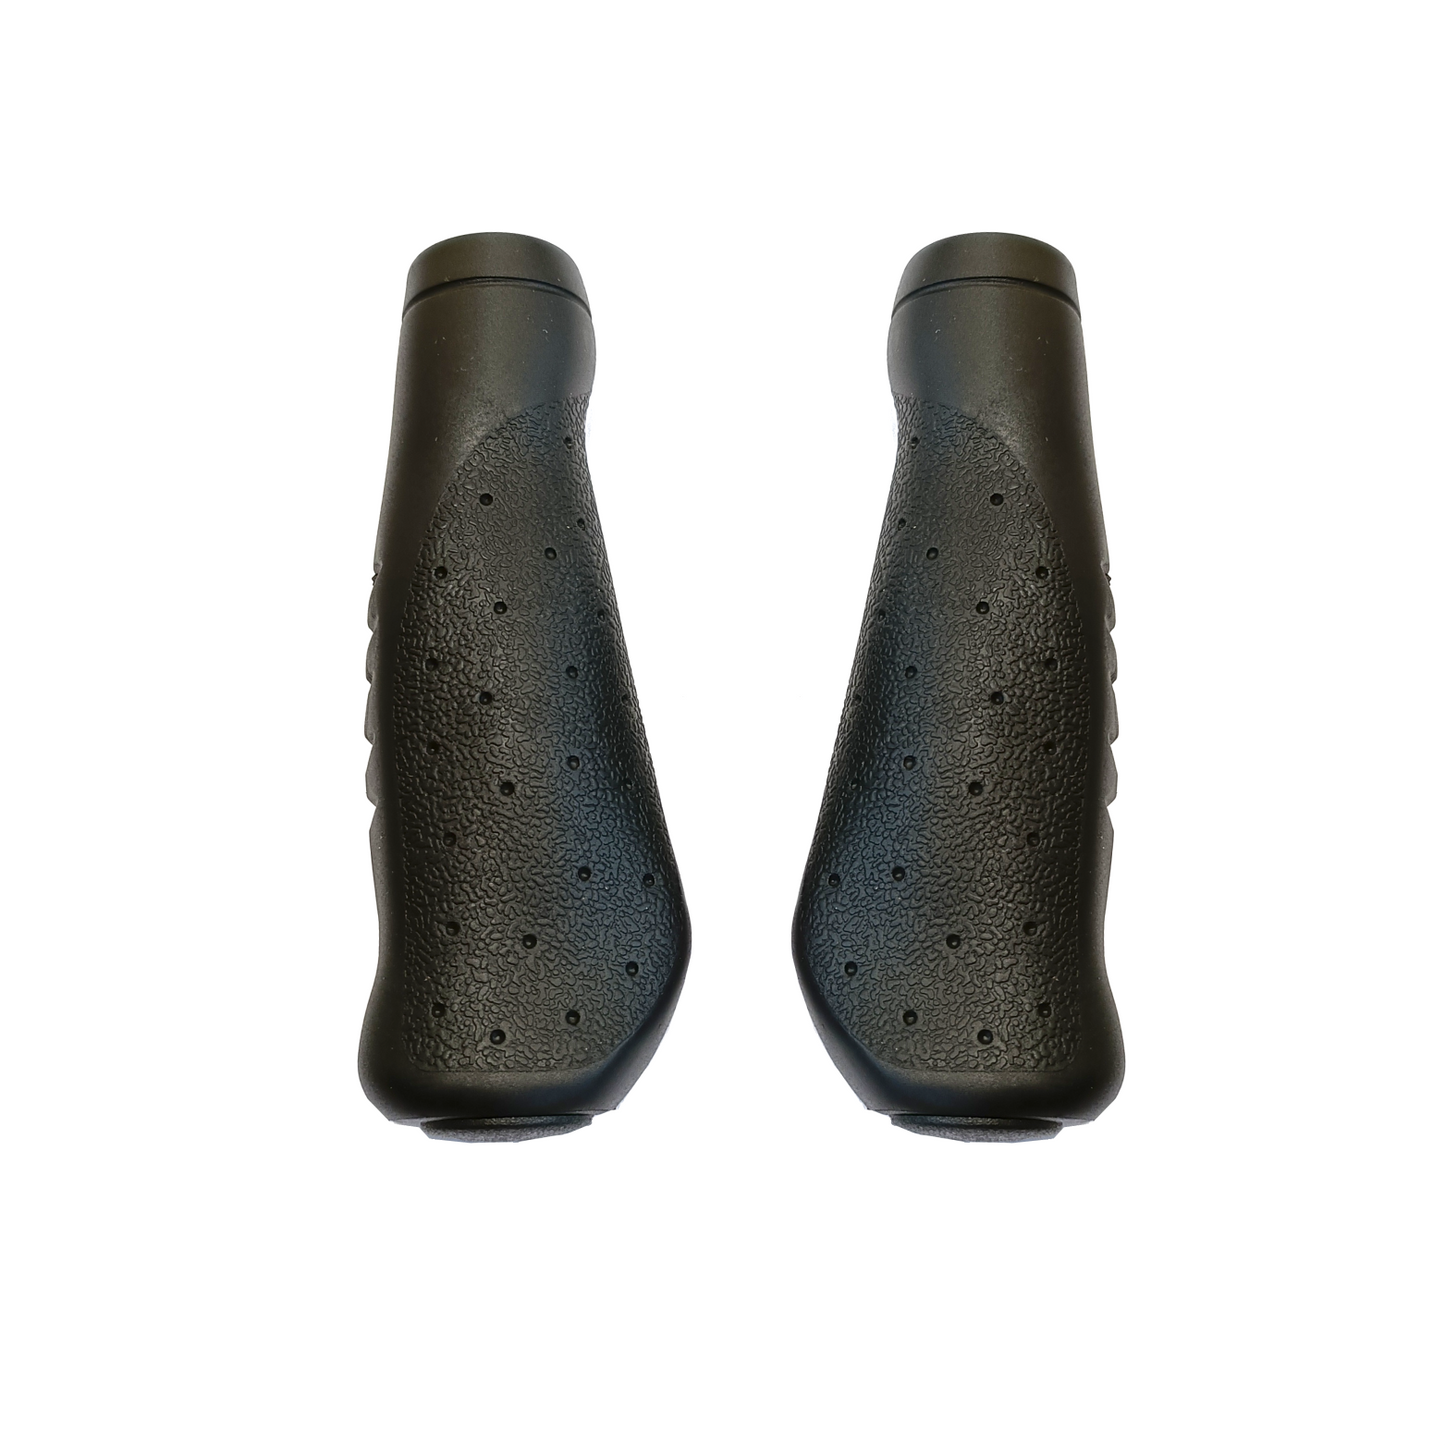 Maniglie della cintura nera Falkx Falkx, nero. Lunghezza 135 135 mm (confezionamento del workshop)